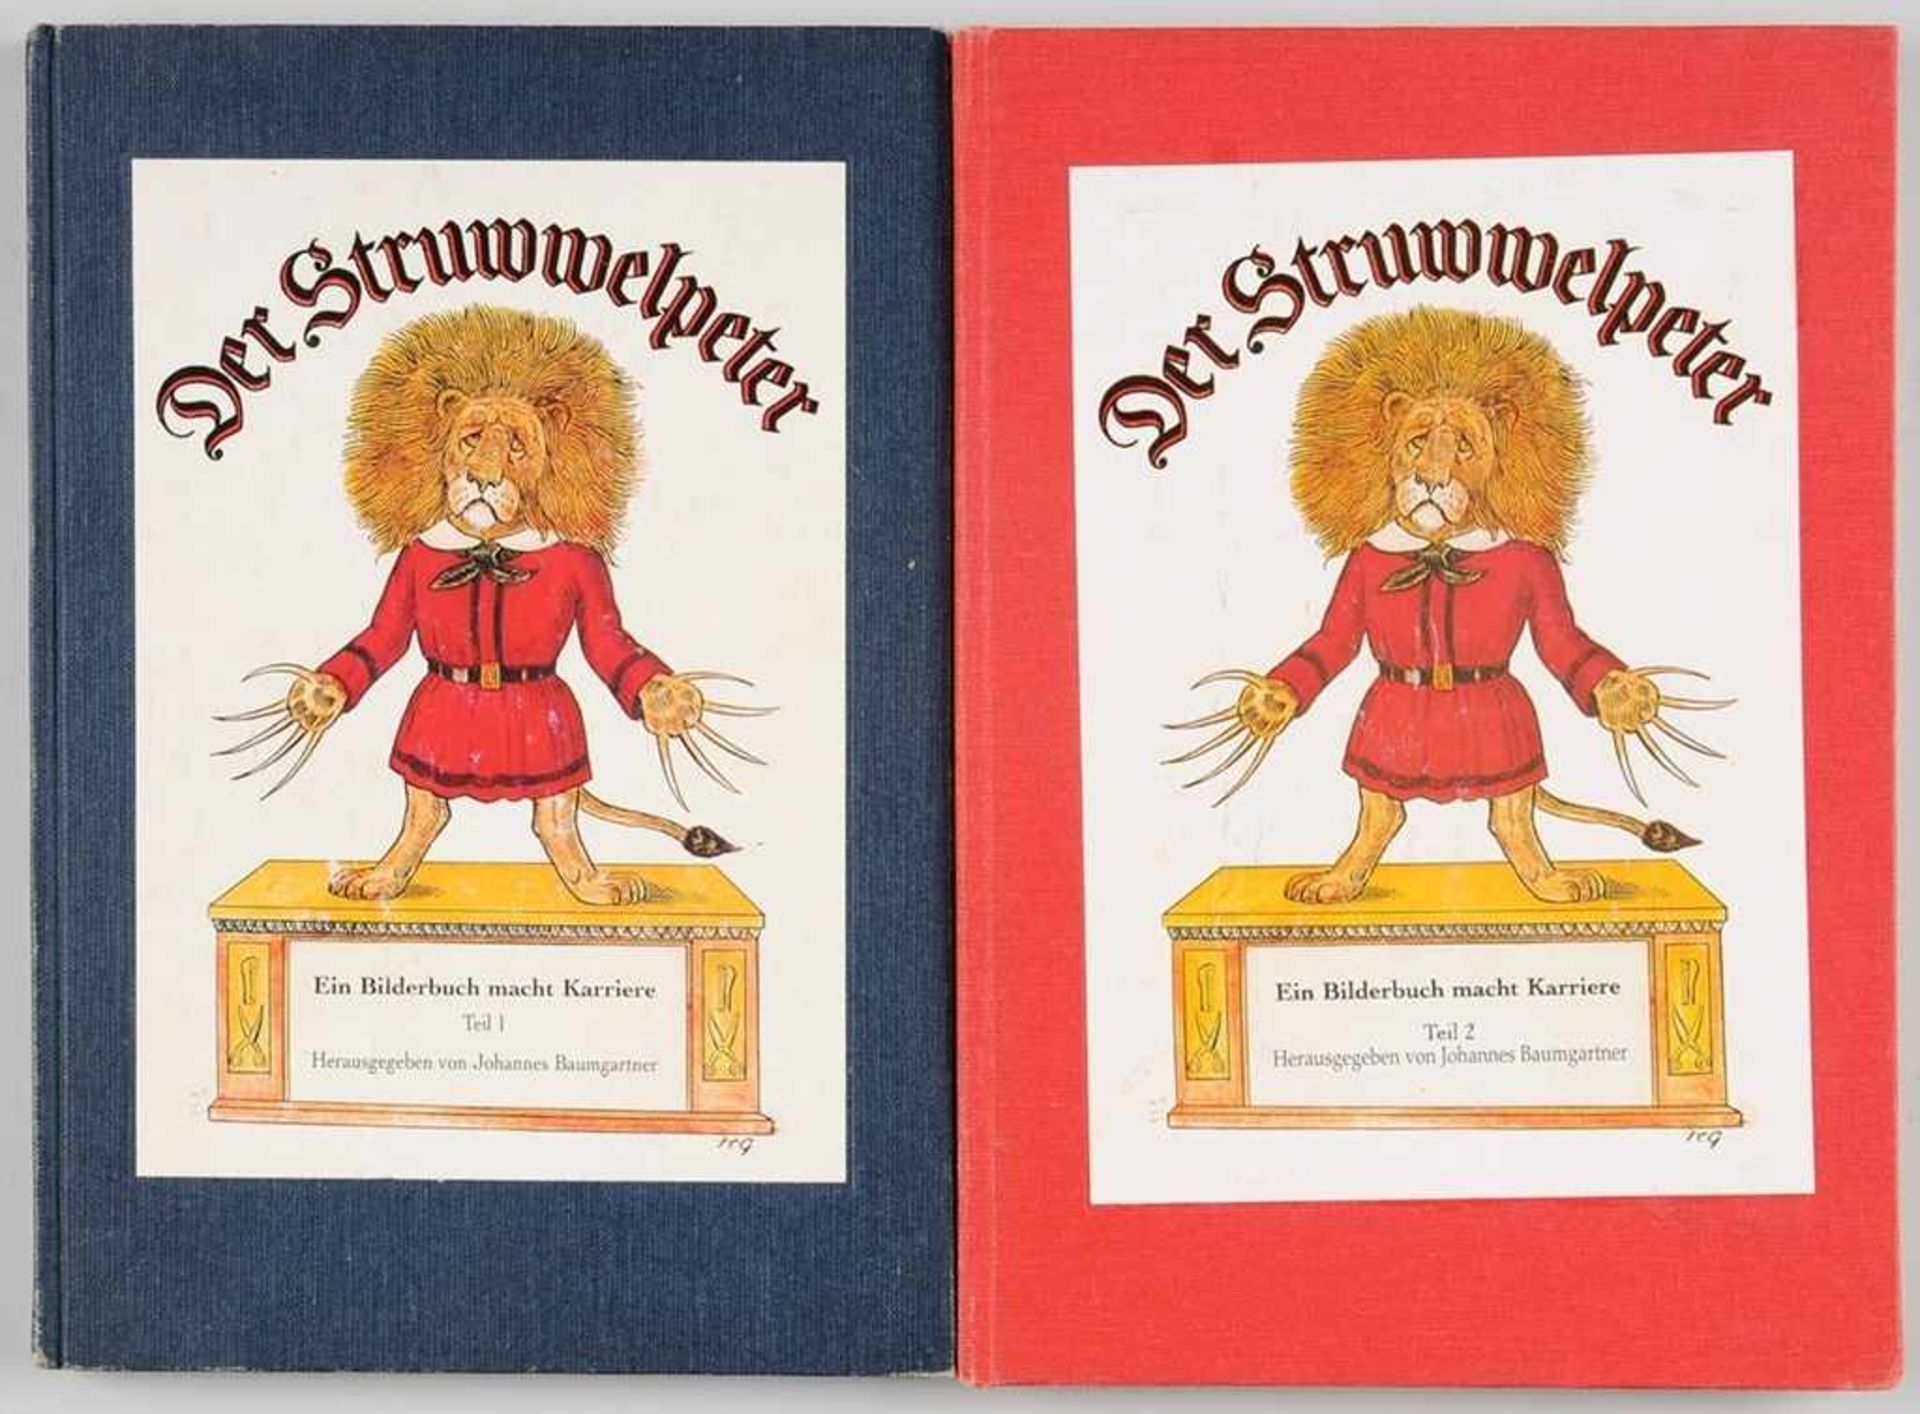 "Der Struwelpeter. Ein Bilderbuch macht Kariere." hrsg. von Johannes Baumgartner, Freiburg 1998. 2